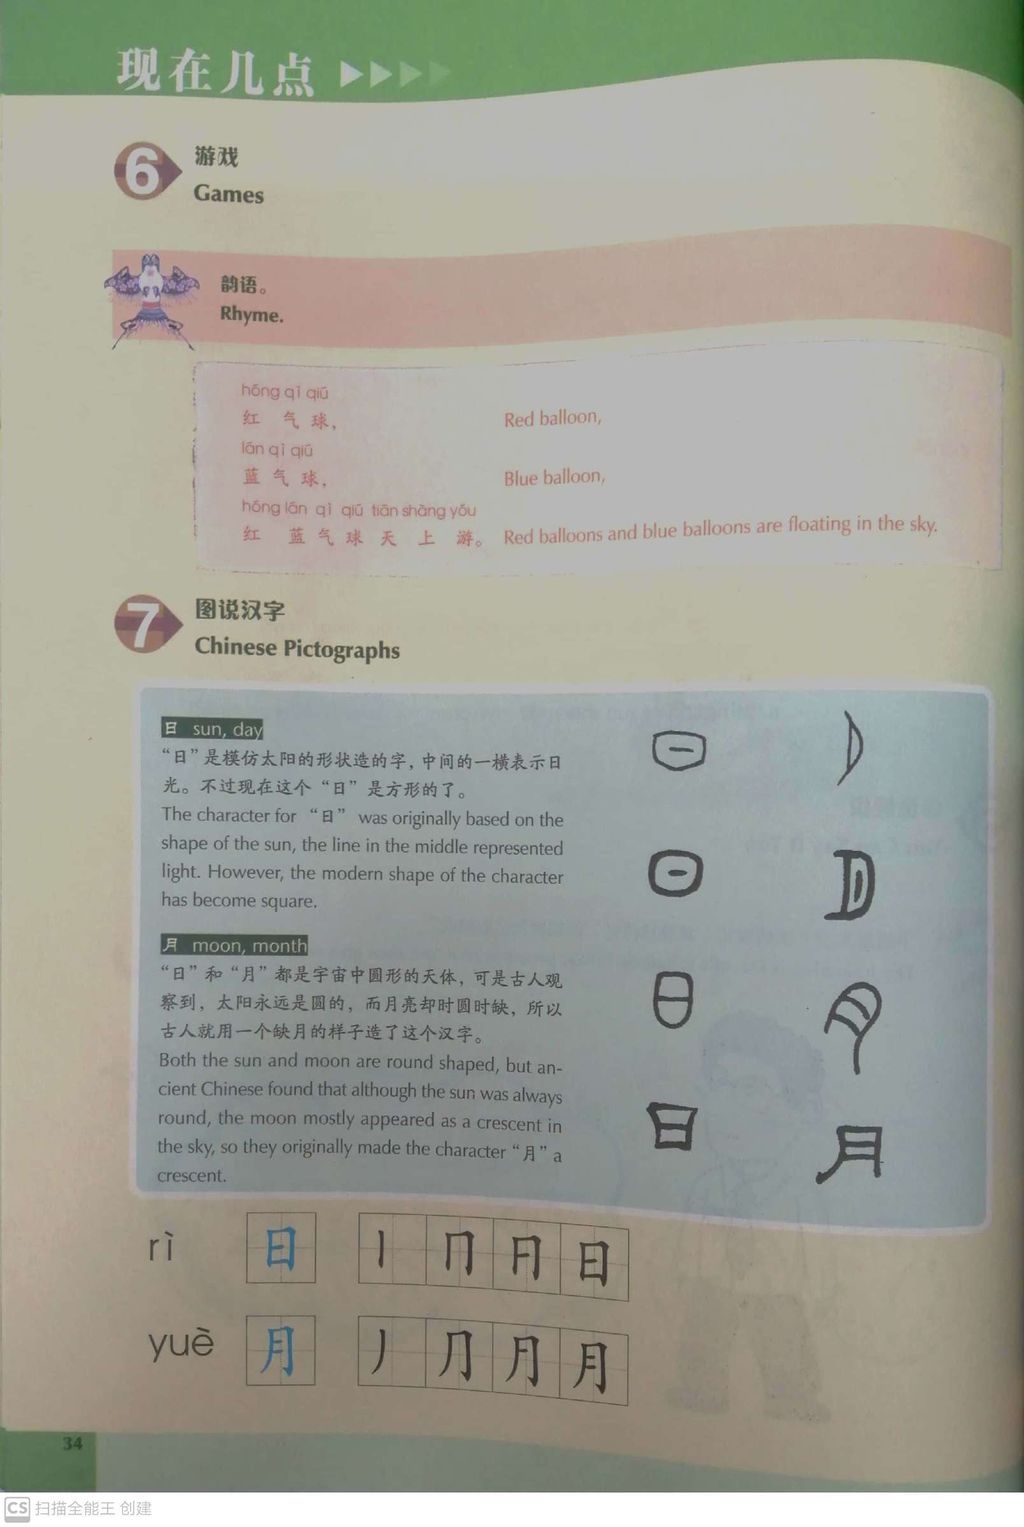 体验汉语——留学篇_内页3.jpg